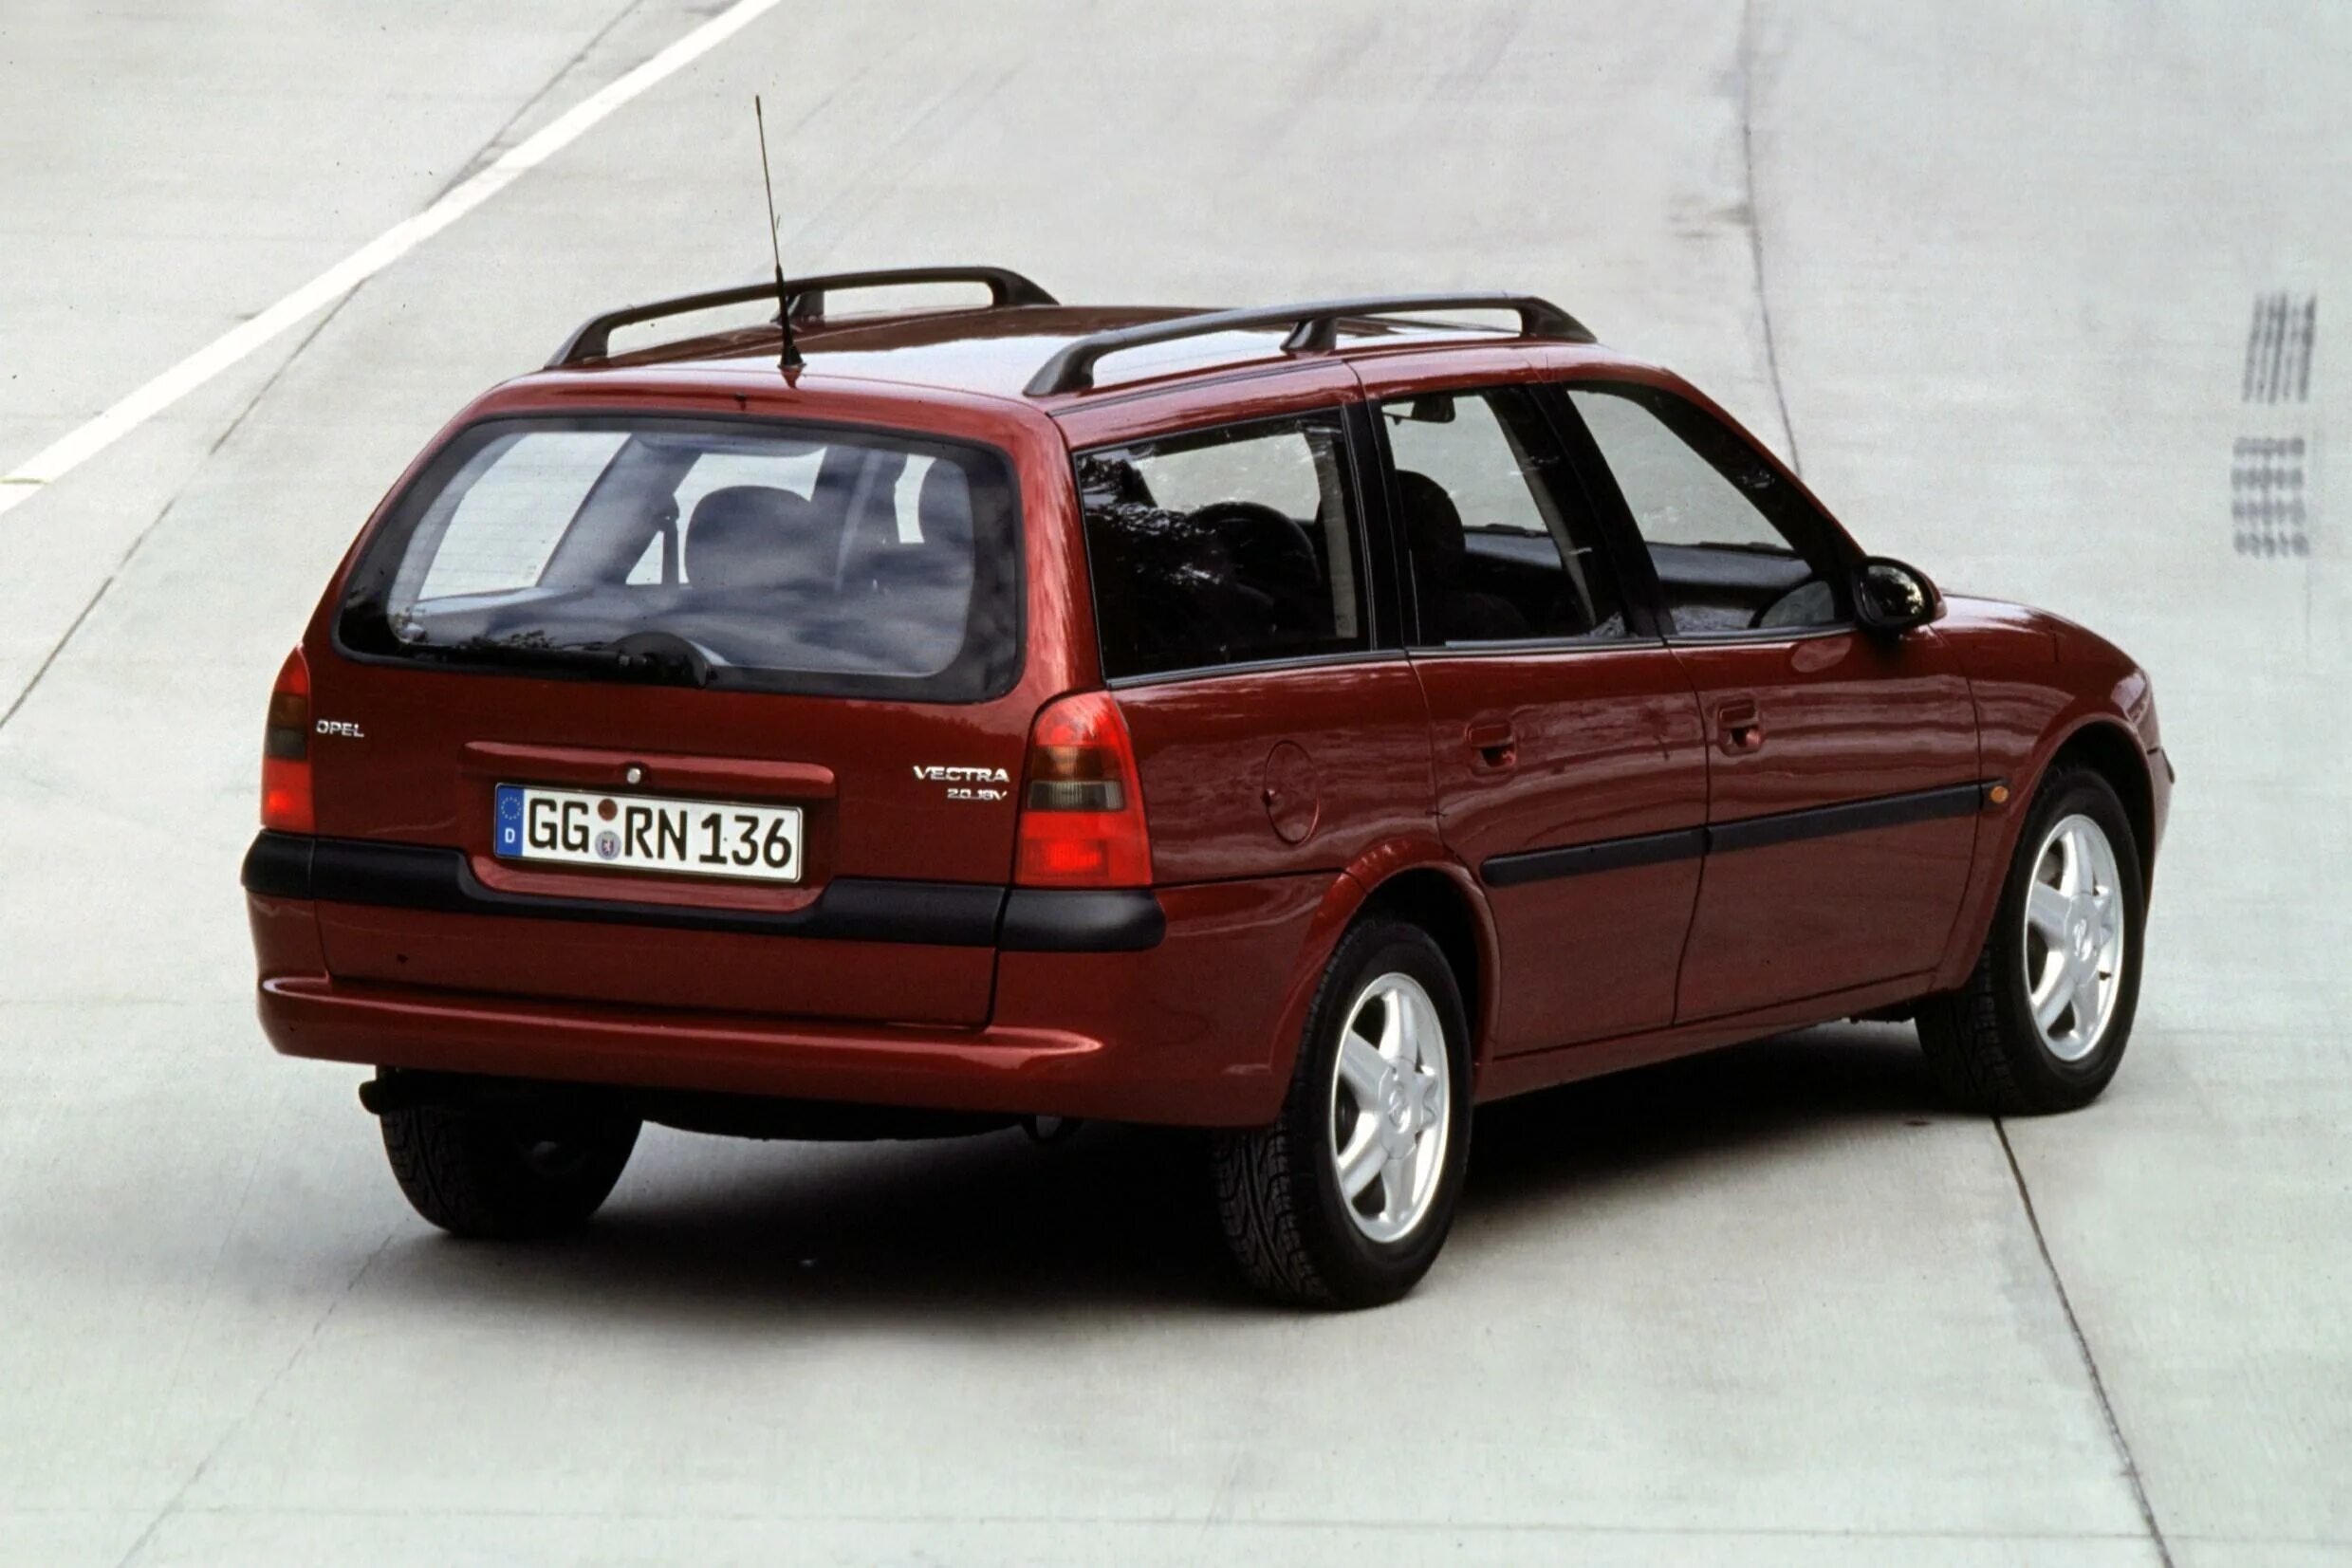 Опель 1999 универсал. Опель Вектра Караван 1998 универсал. Opel Vectra b Caravan 1998. Opel Vectra универсал 1999. Опель Вектра Караван 2000.